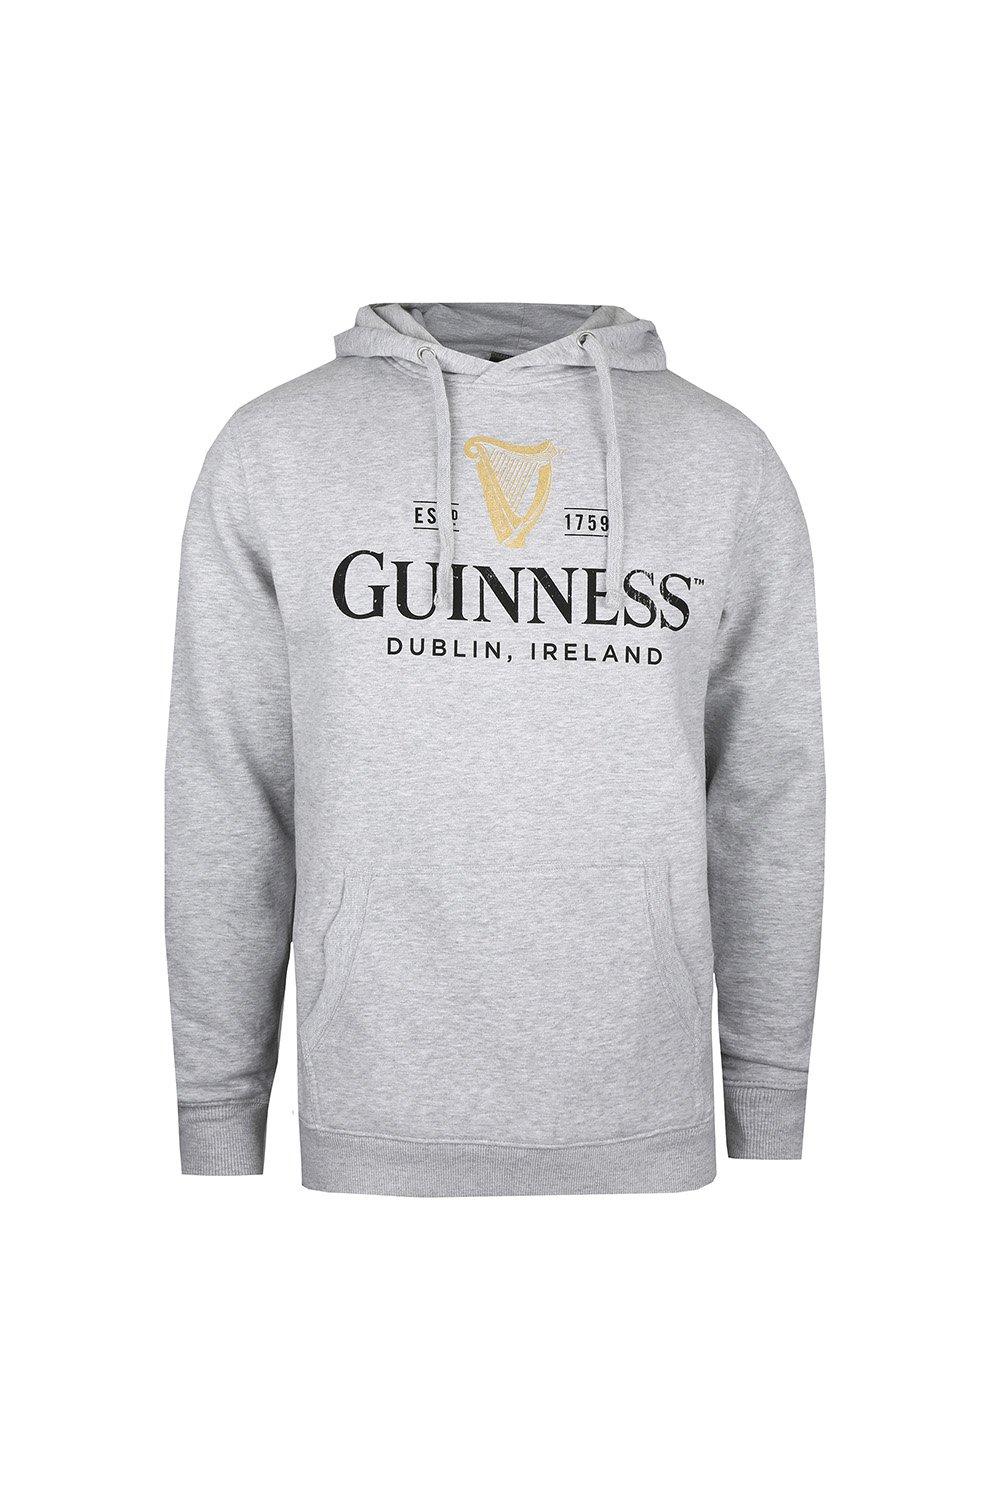 Hoodies & Sweatshirts | Guinness Harp Mens Hoodie | Guinness